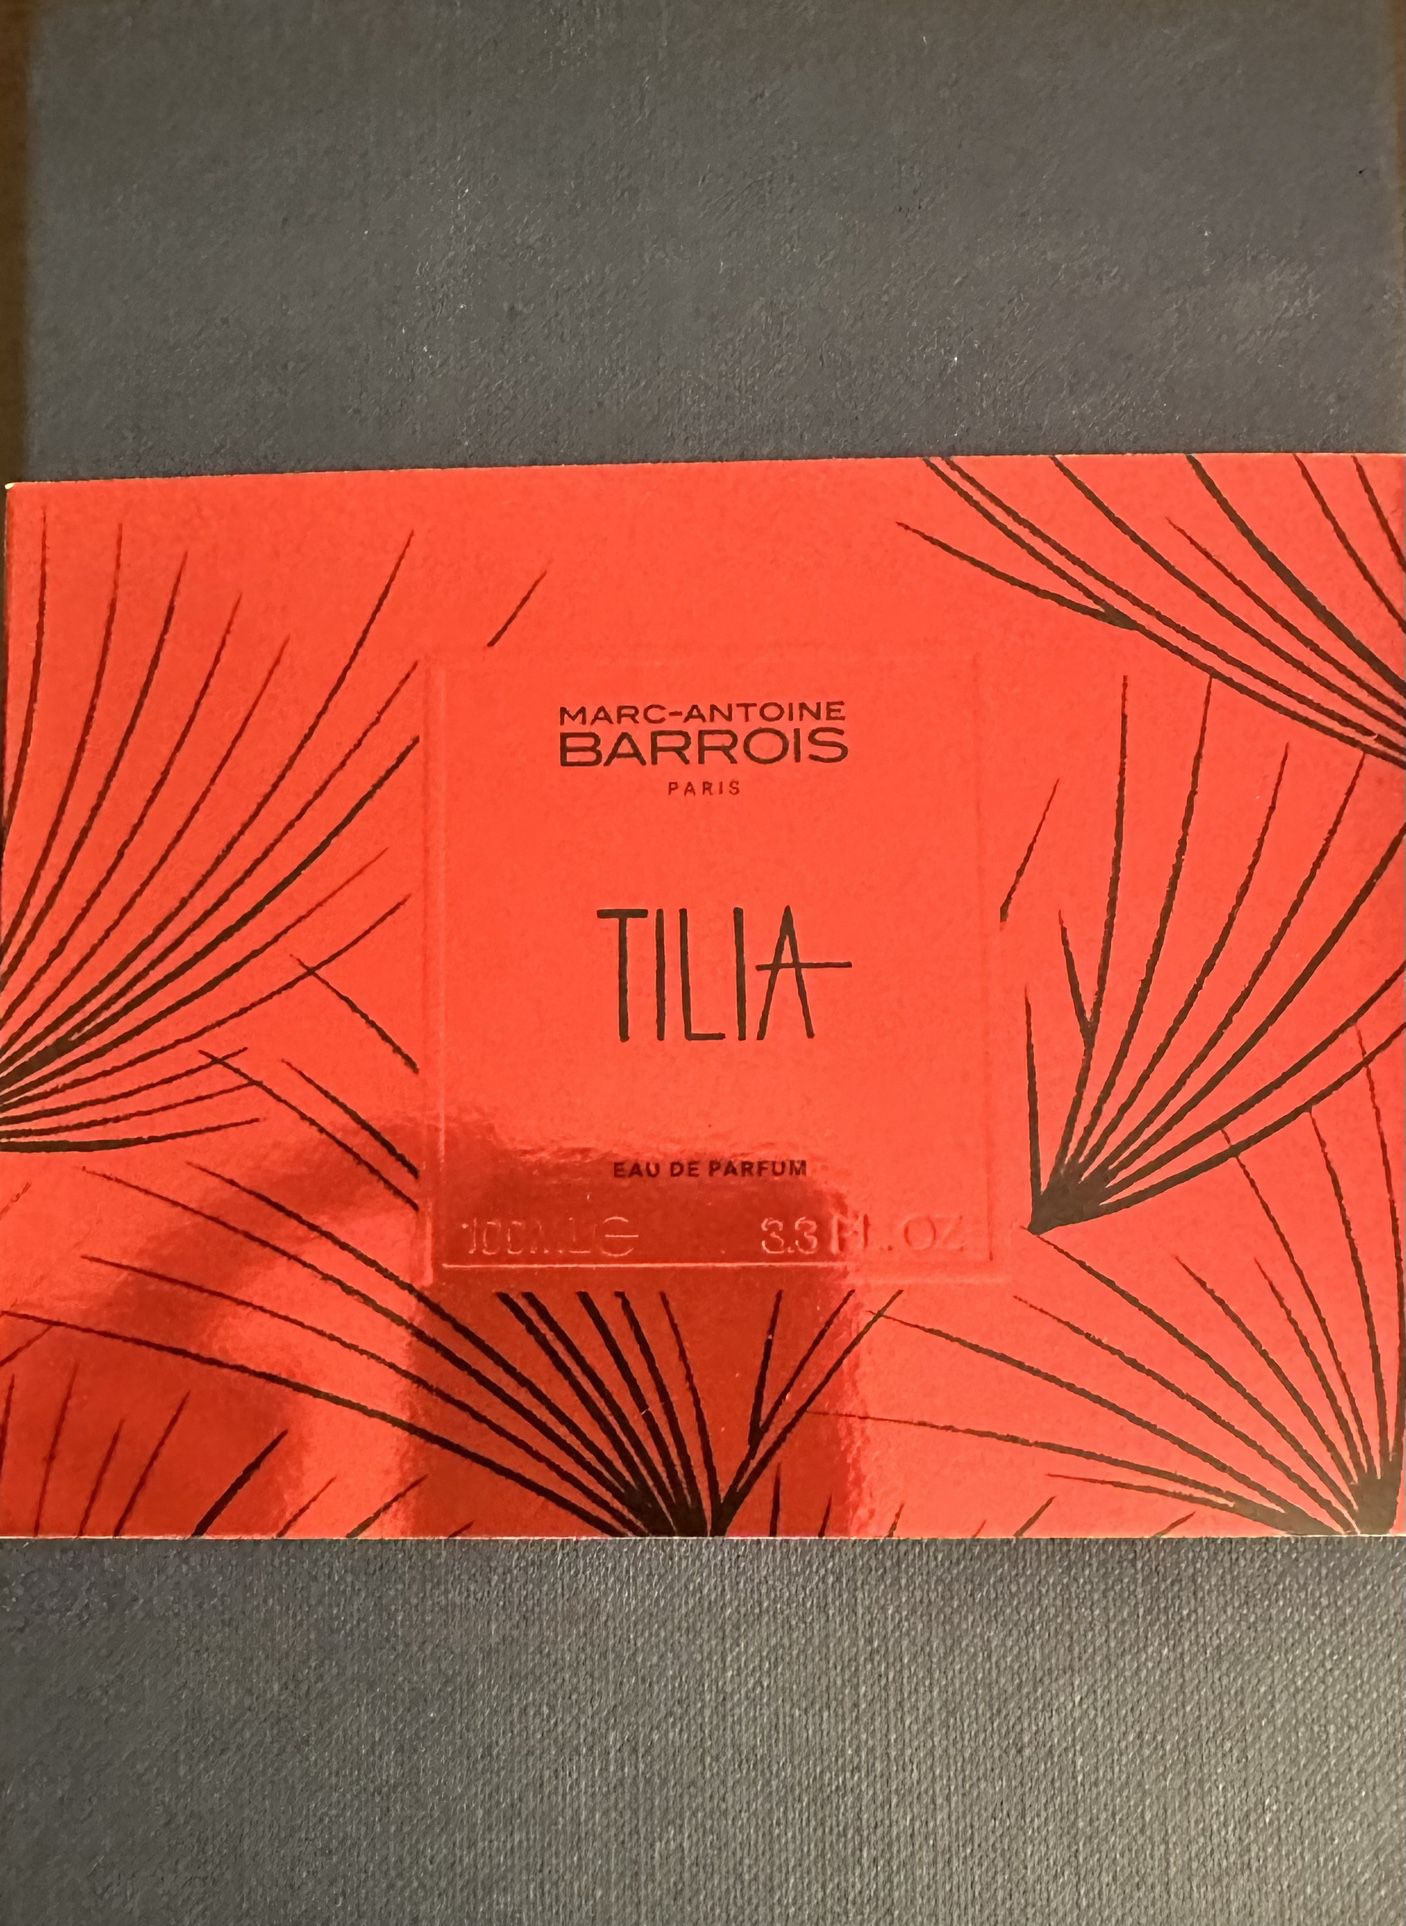 New! Tilia Eau De Parfum By Marc-Antoine Barrois